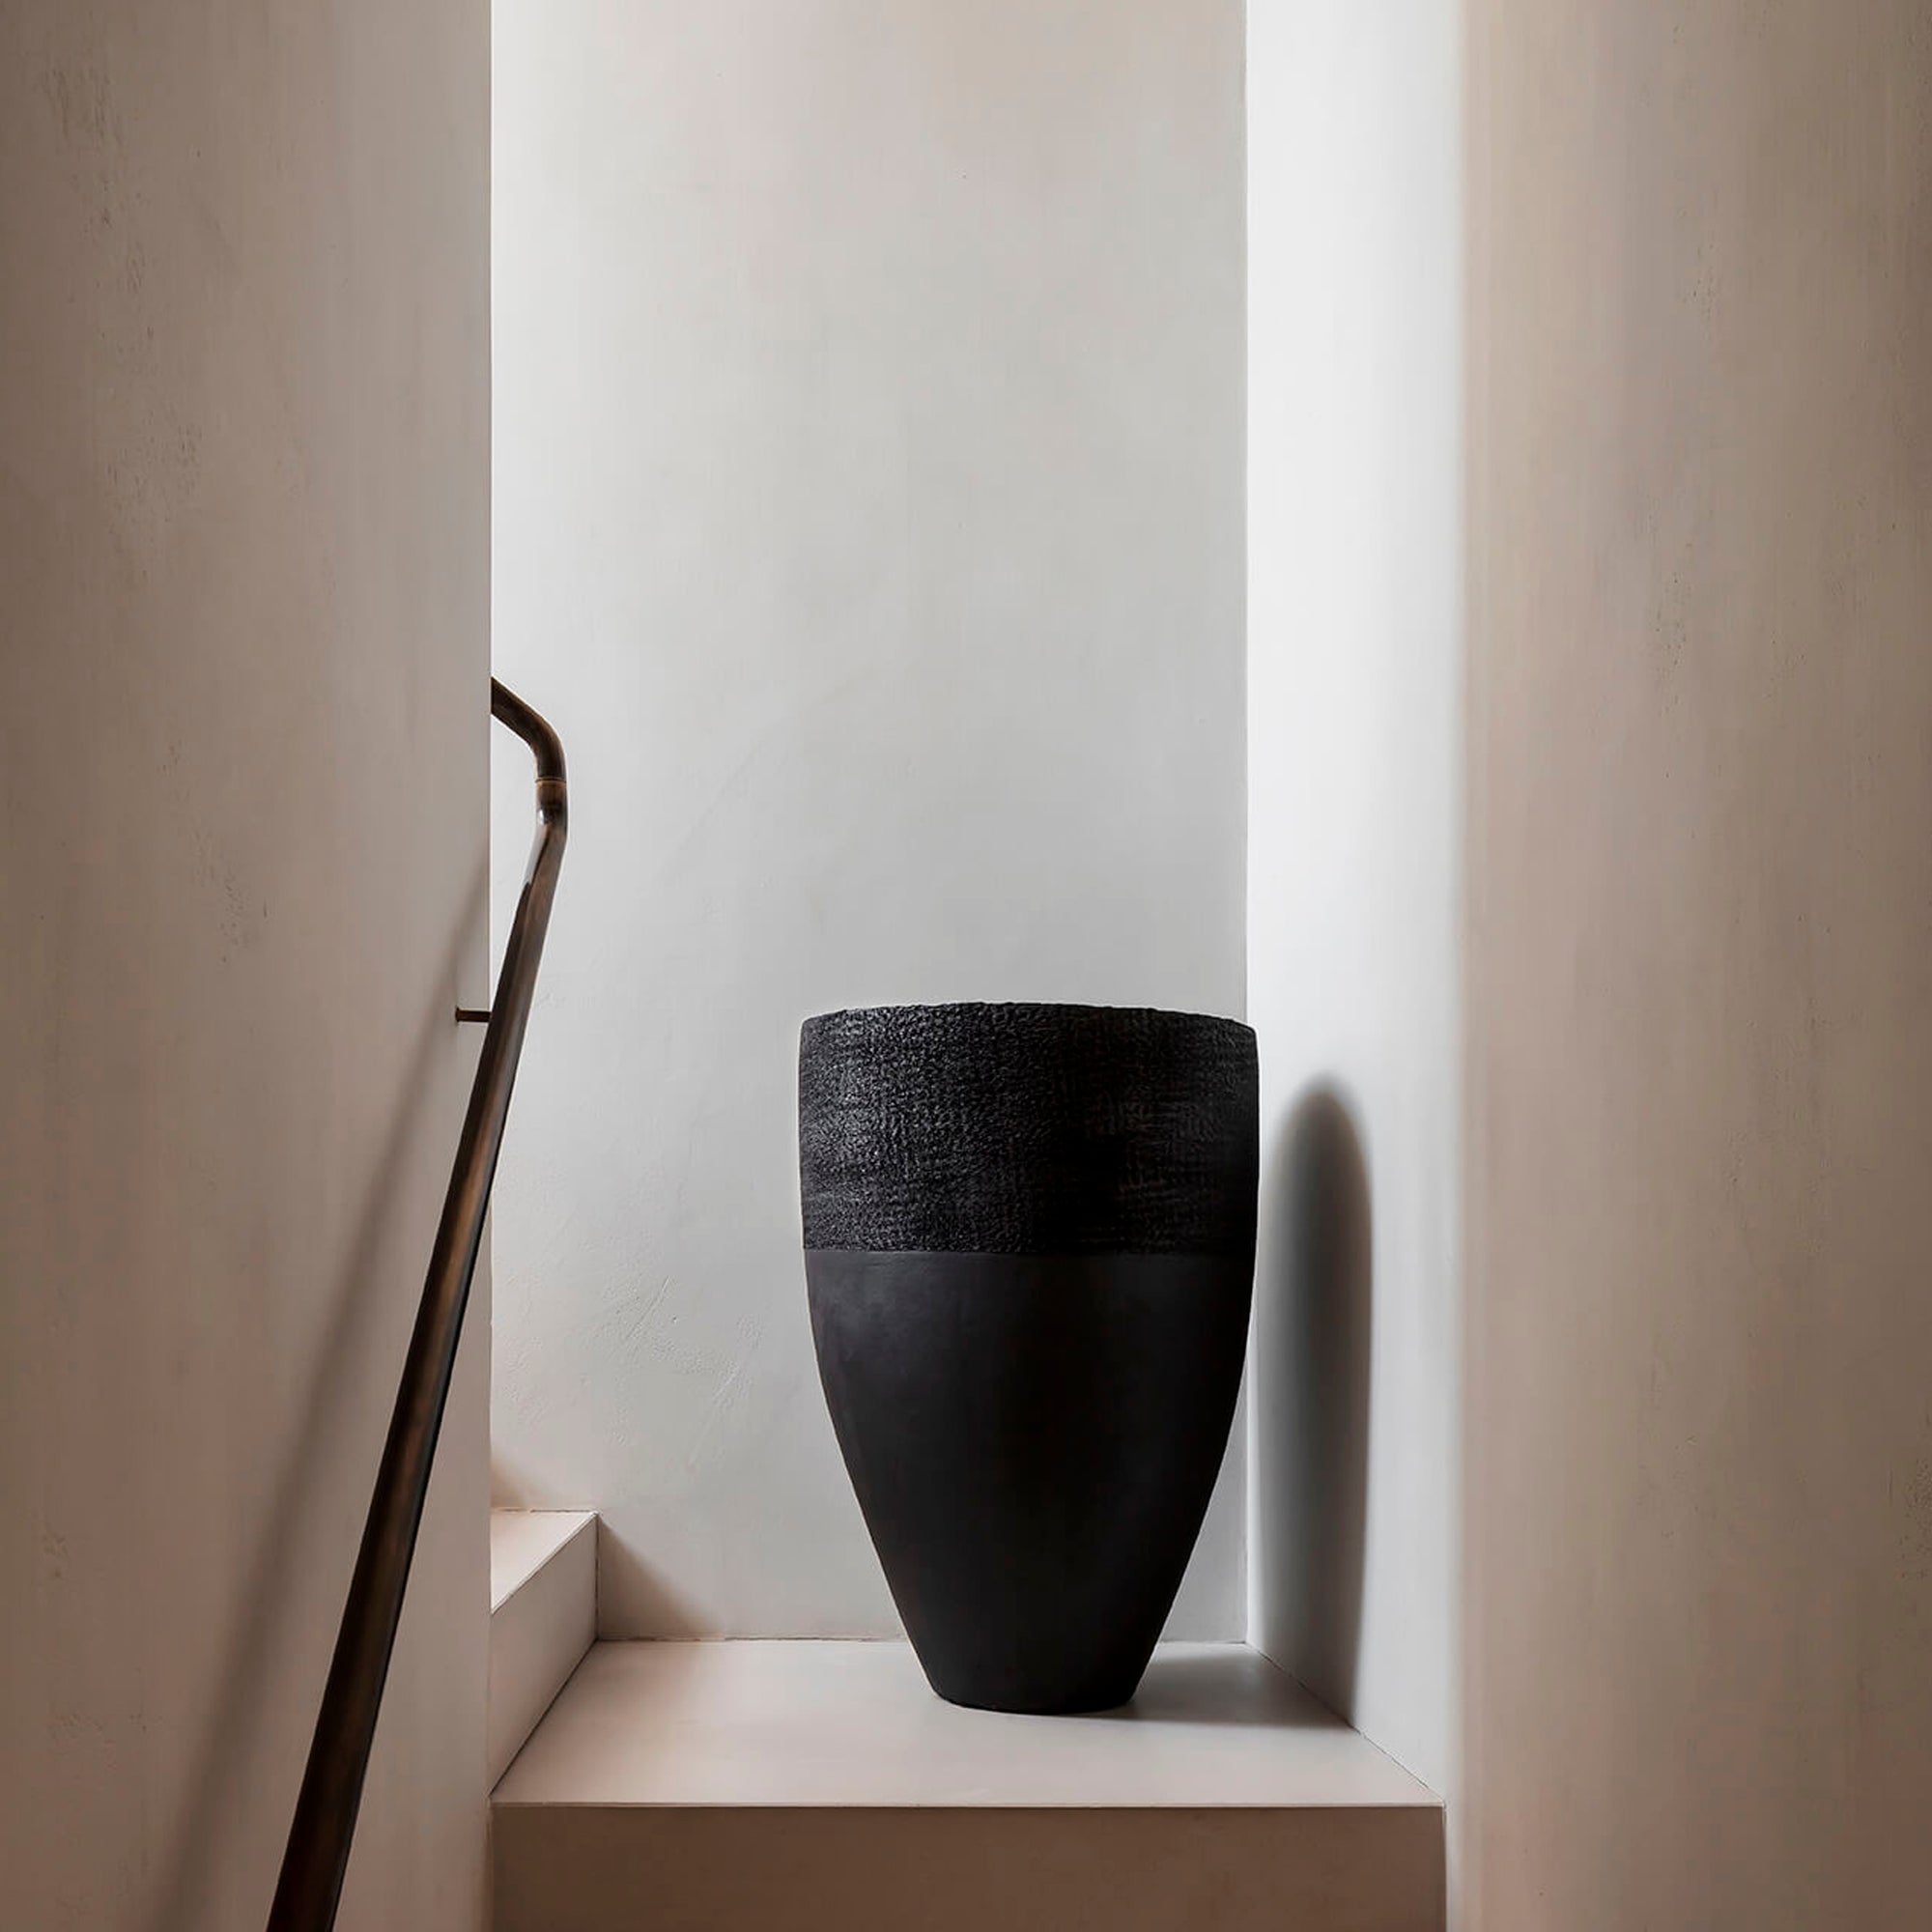 Domani Paris ist ein Blumenkübel in schwarz mit einem Ø40cm und einer Höhe von 120cm. Dieses Gefäß steht in einem hellen Treppenaufgang auf der mittleren Ebene.